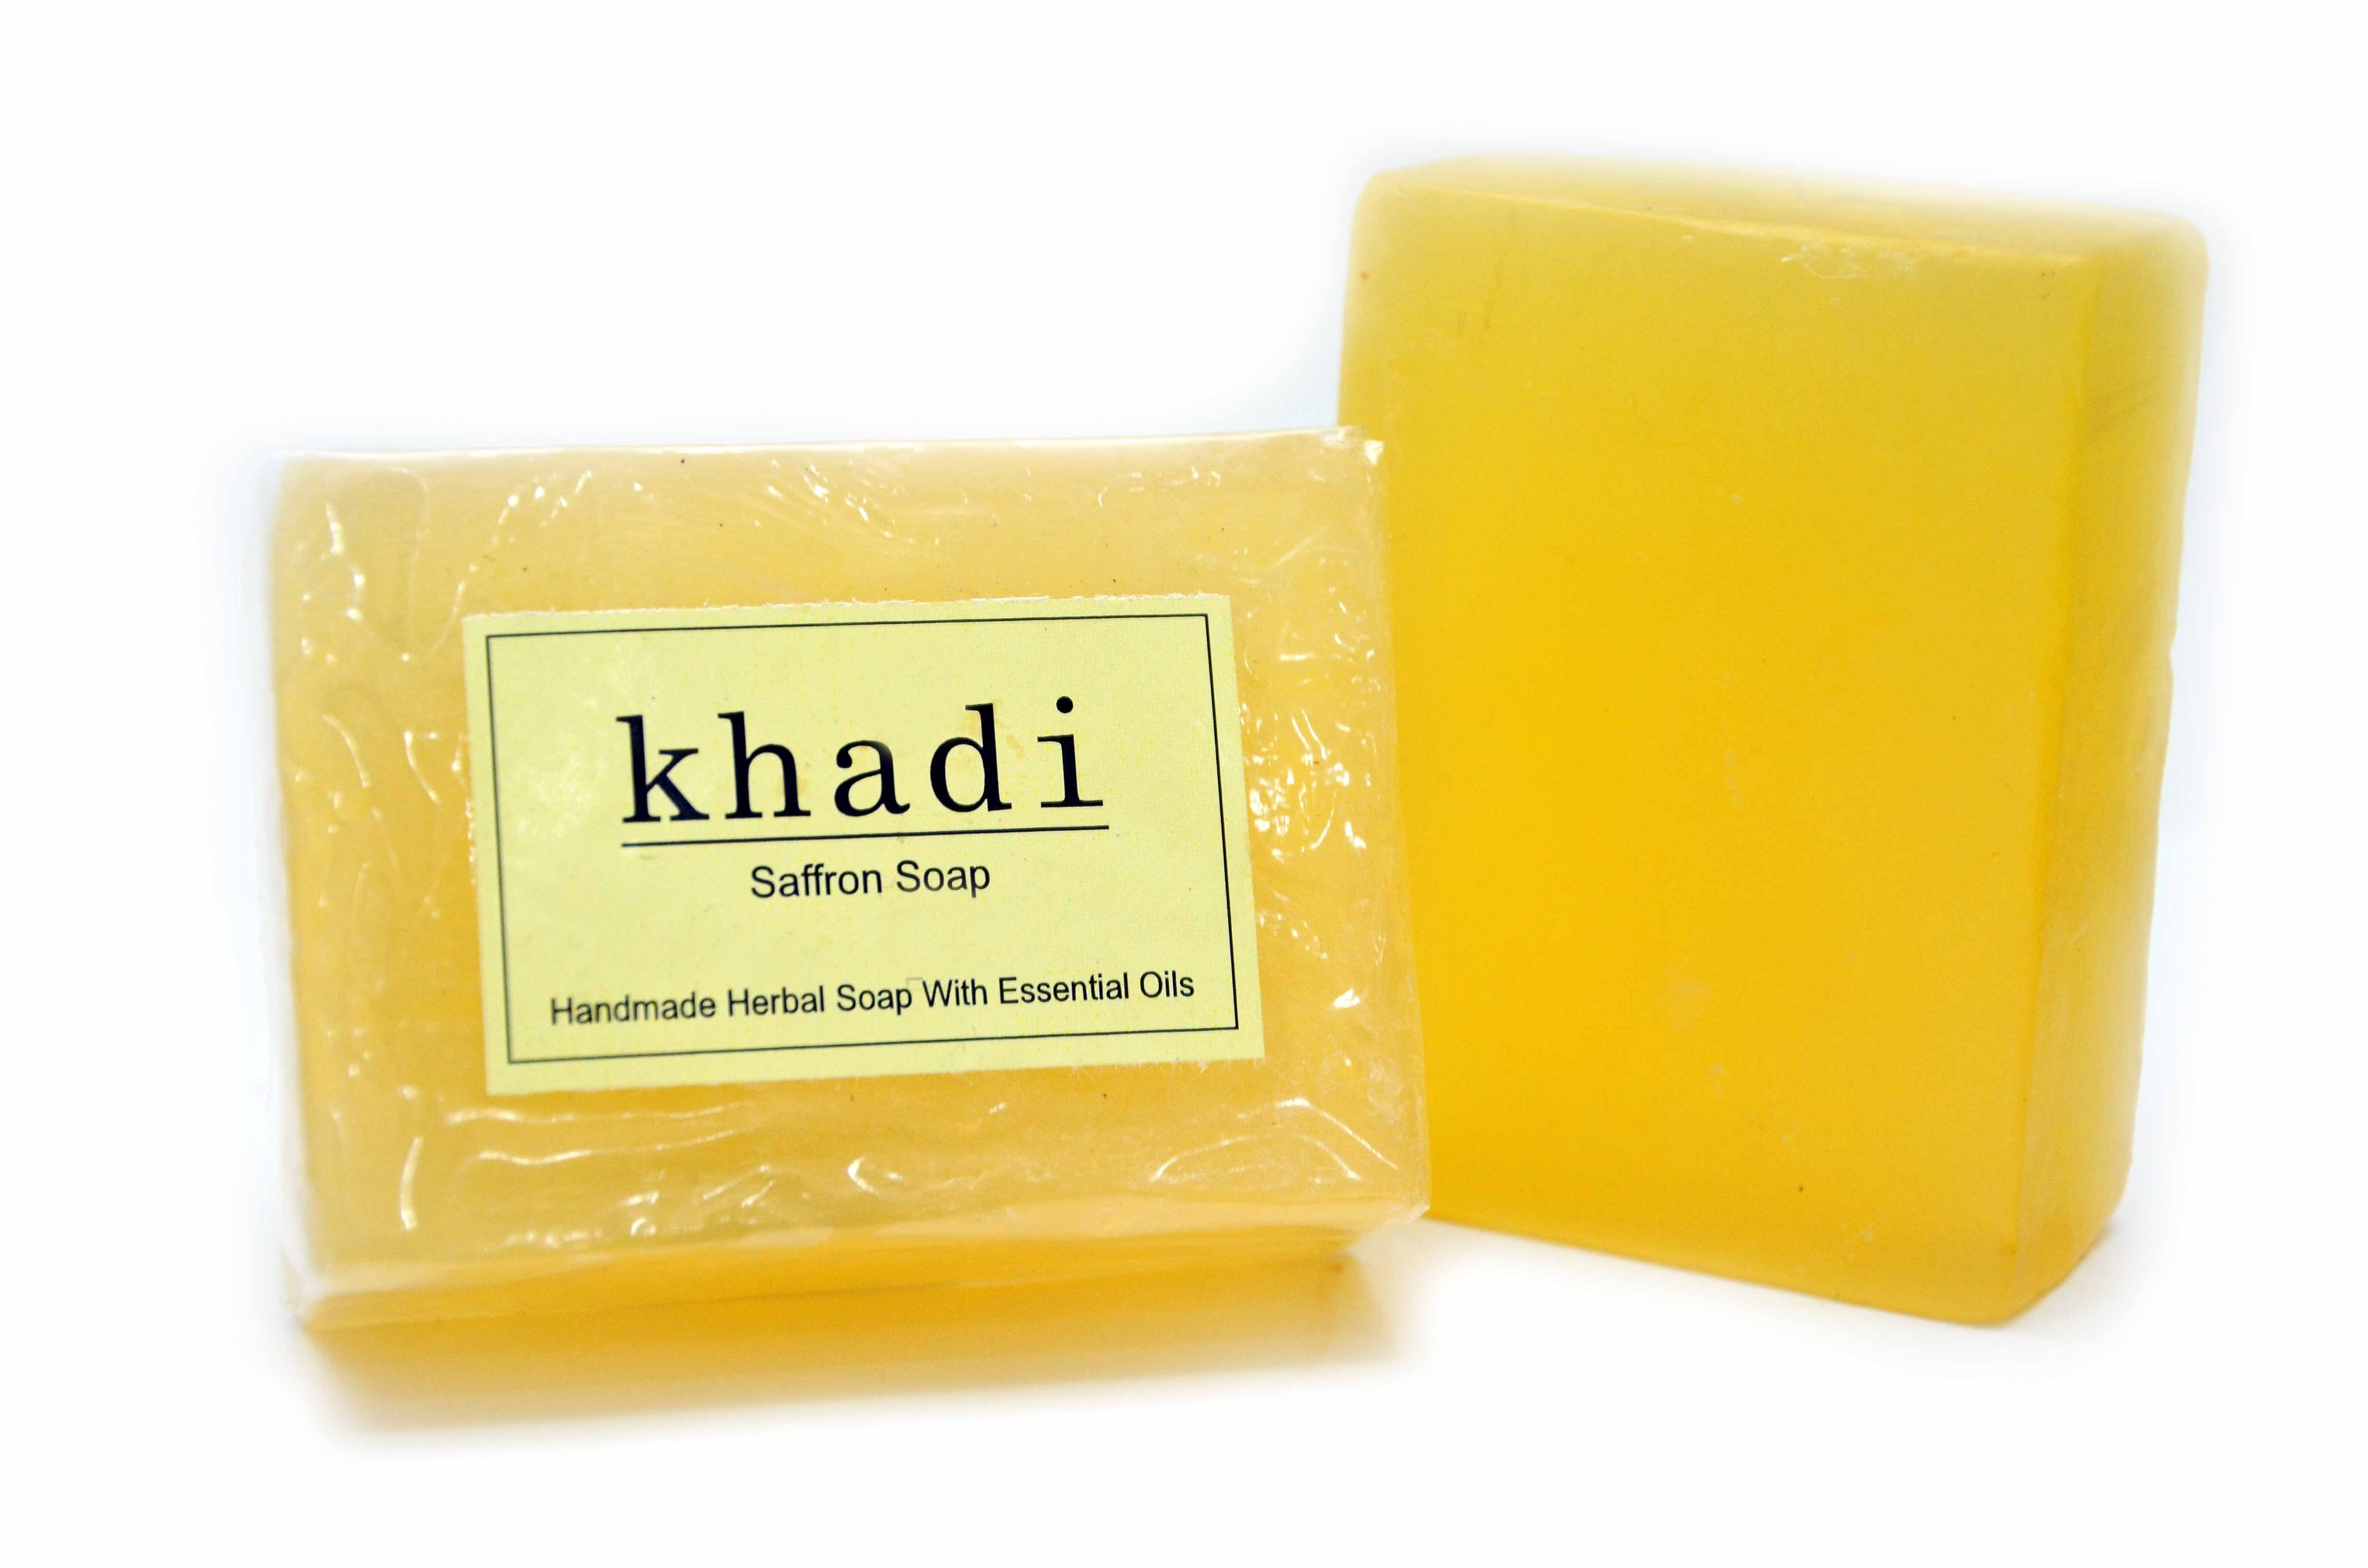 Buy Vagad's Khadi Saffron Soap at Best Price Online